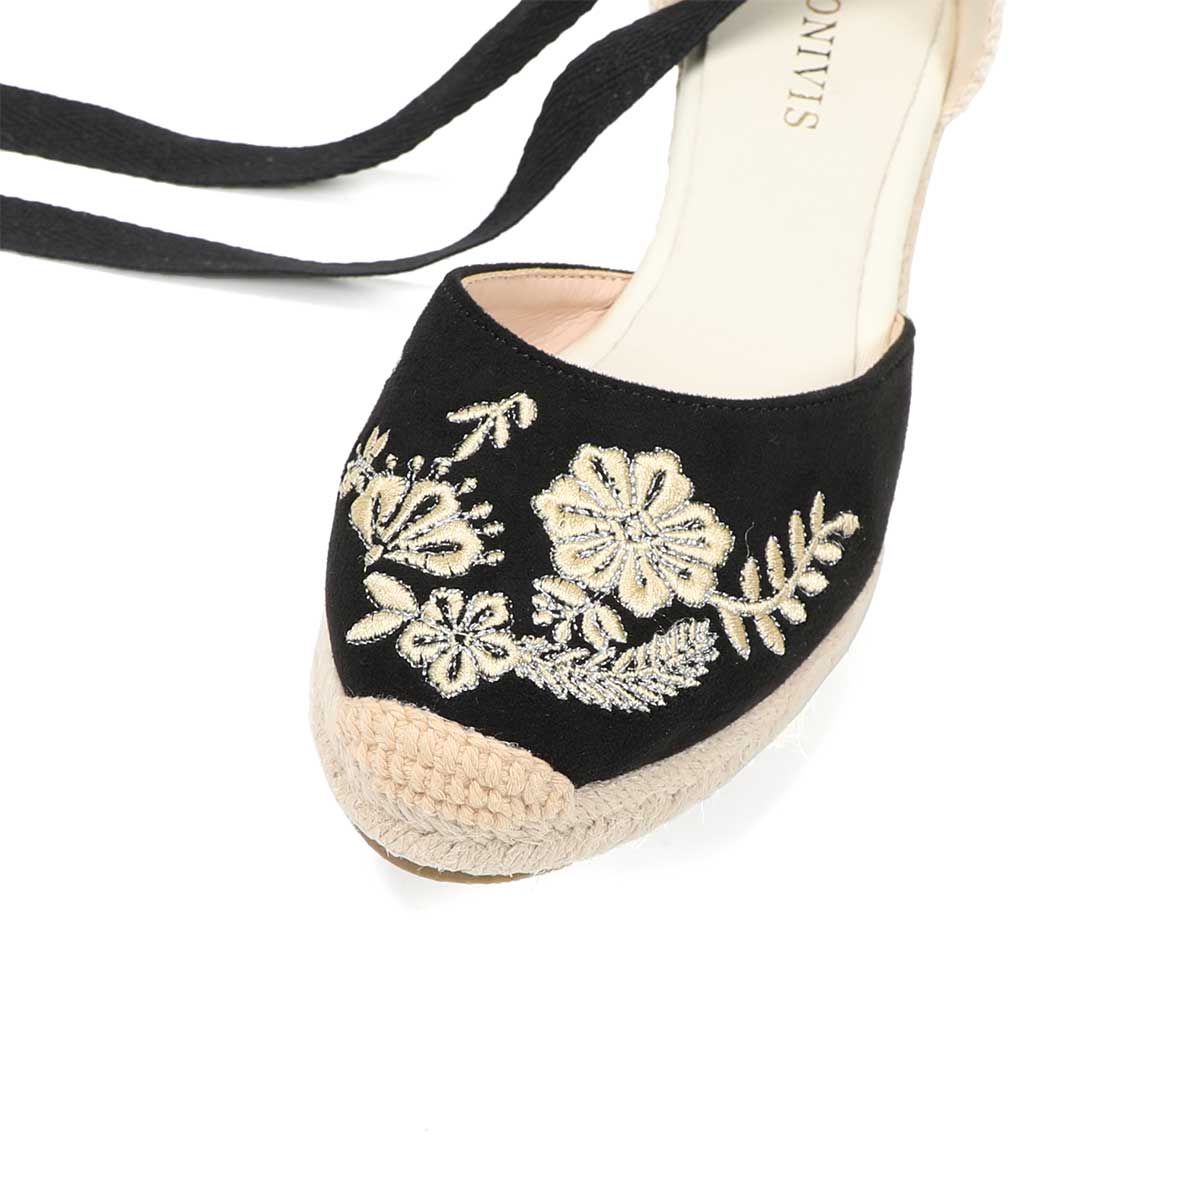 Summer ladies temperament wedge heel strap sandals black all-match thick heel platform waterproof platform 5cm espadrille